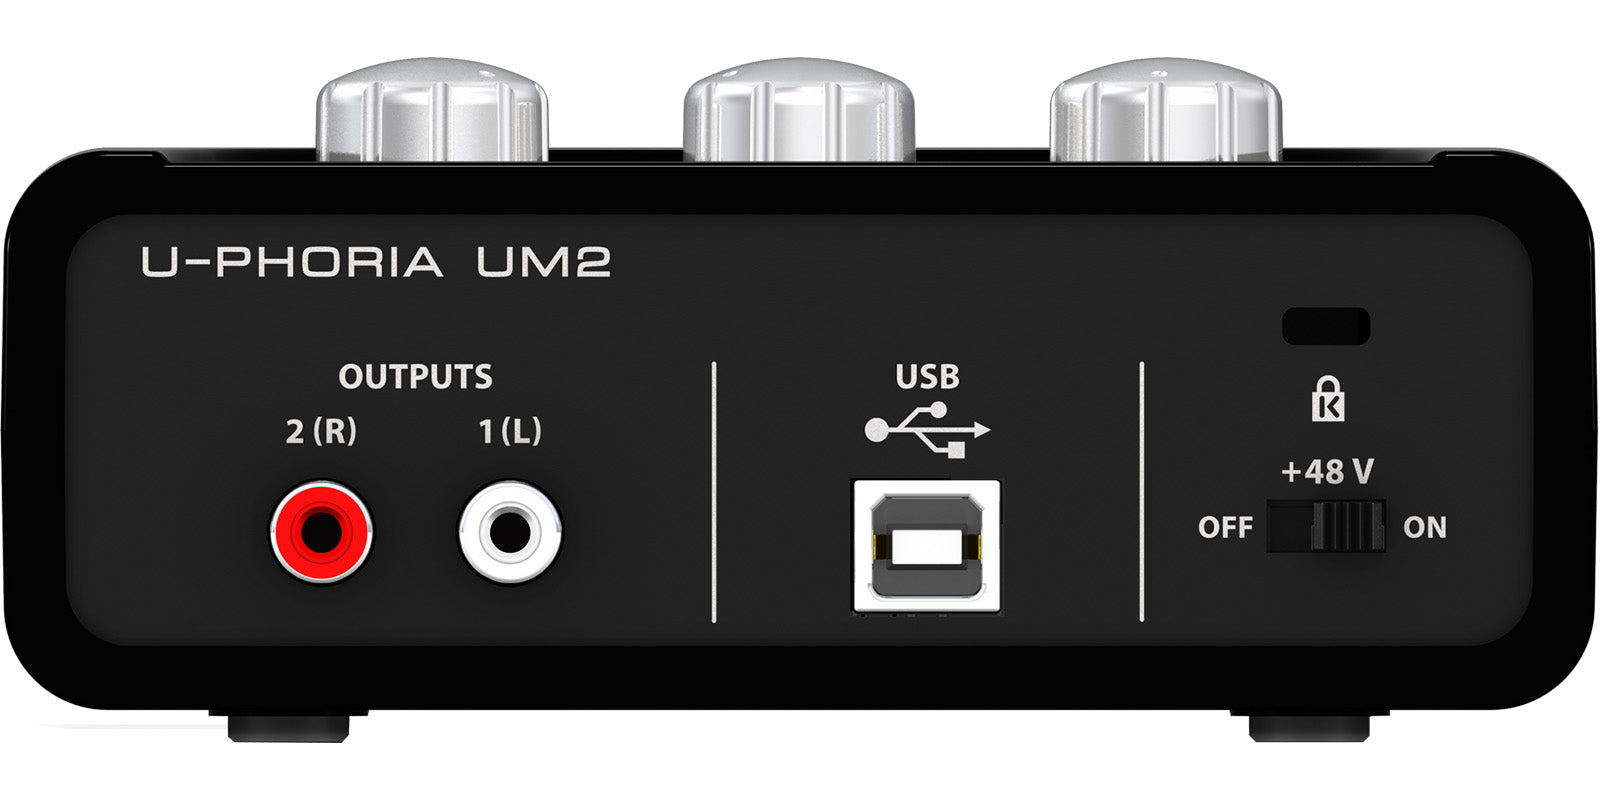 Interfaz de audio USB con 1x XLR/TRS 1x 1/4 2X RCA USB, rojo